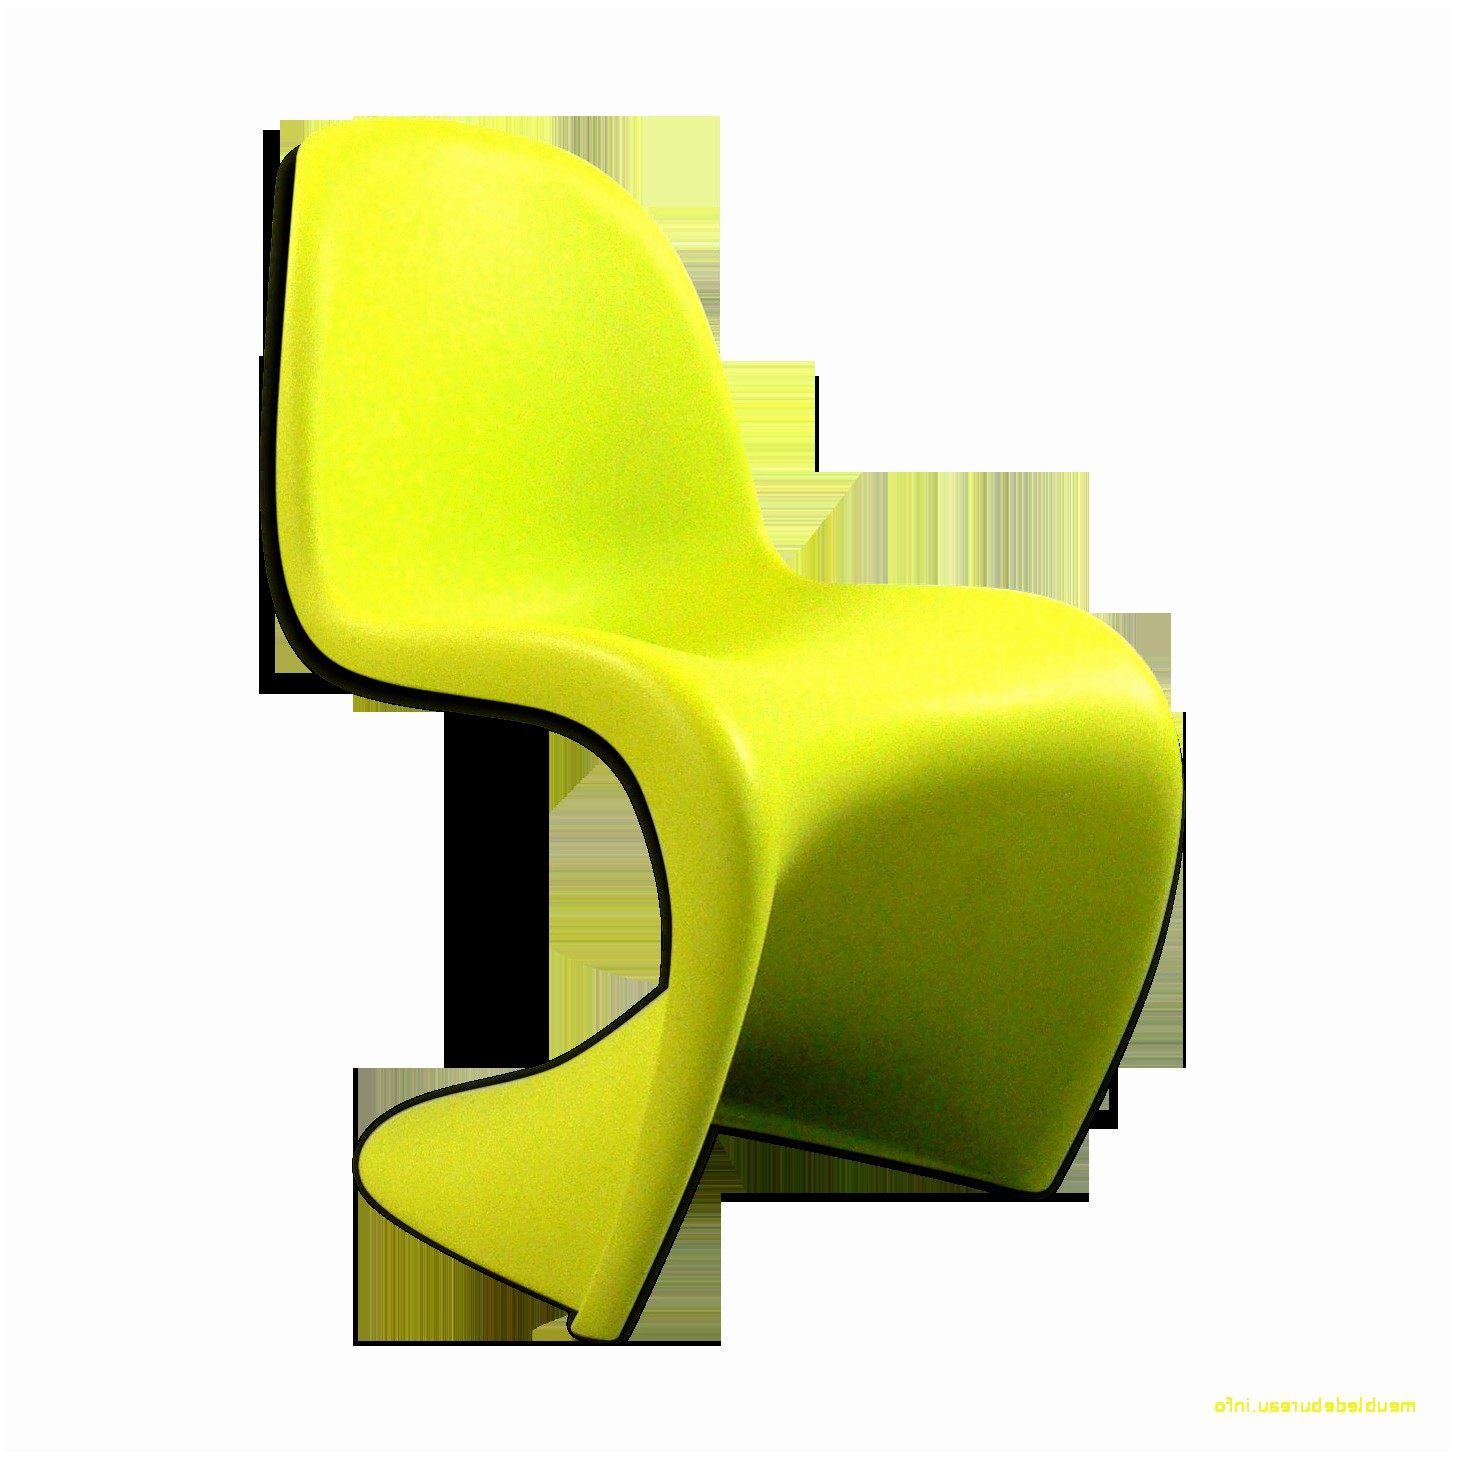 Lit En Bois Ikea Belle étonnant Fauteuil Cuir Design Sur Chaise Ikea Bureau Chaise Ikea